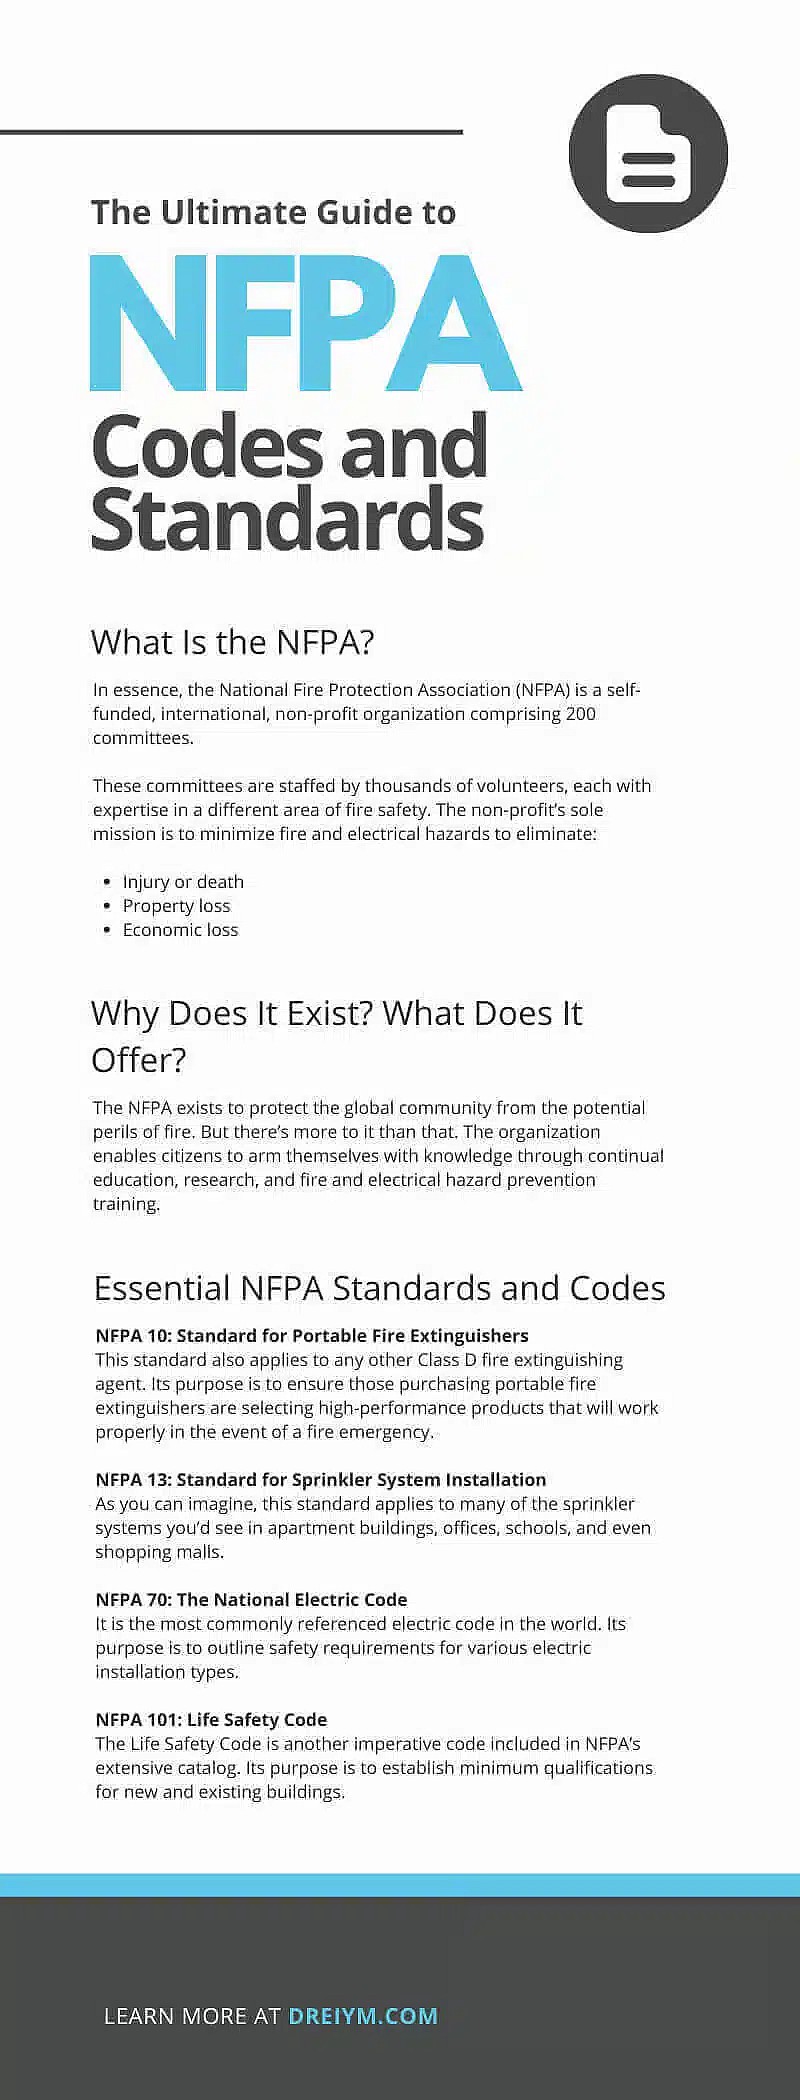 Den ultimative guide til NFPA's koder og standarder